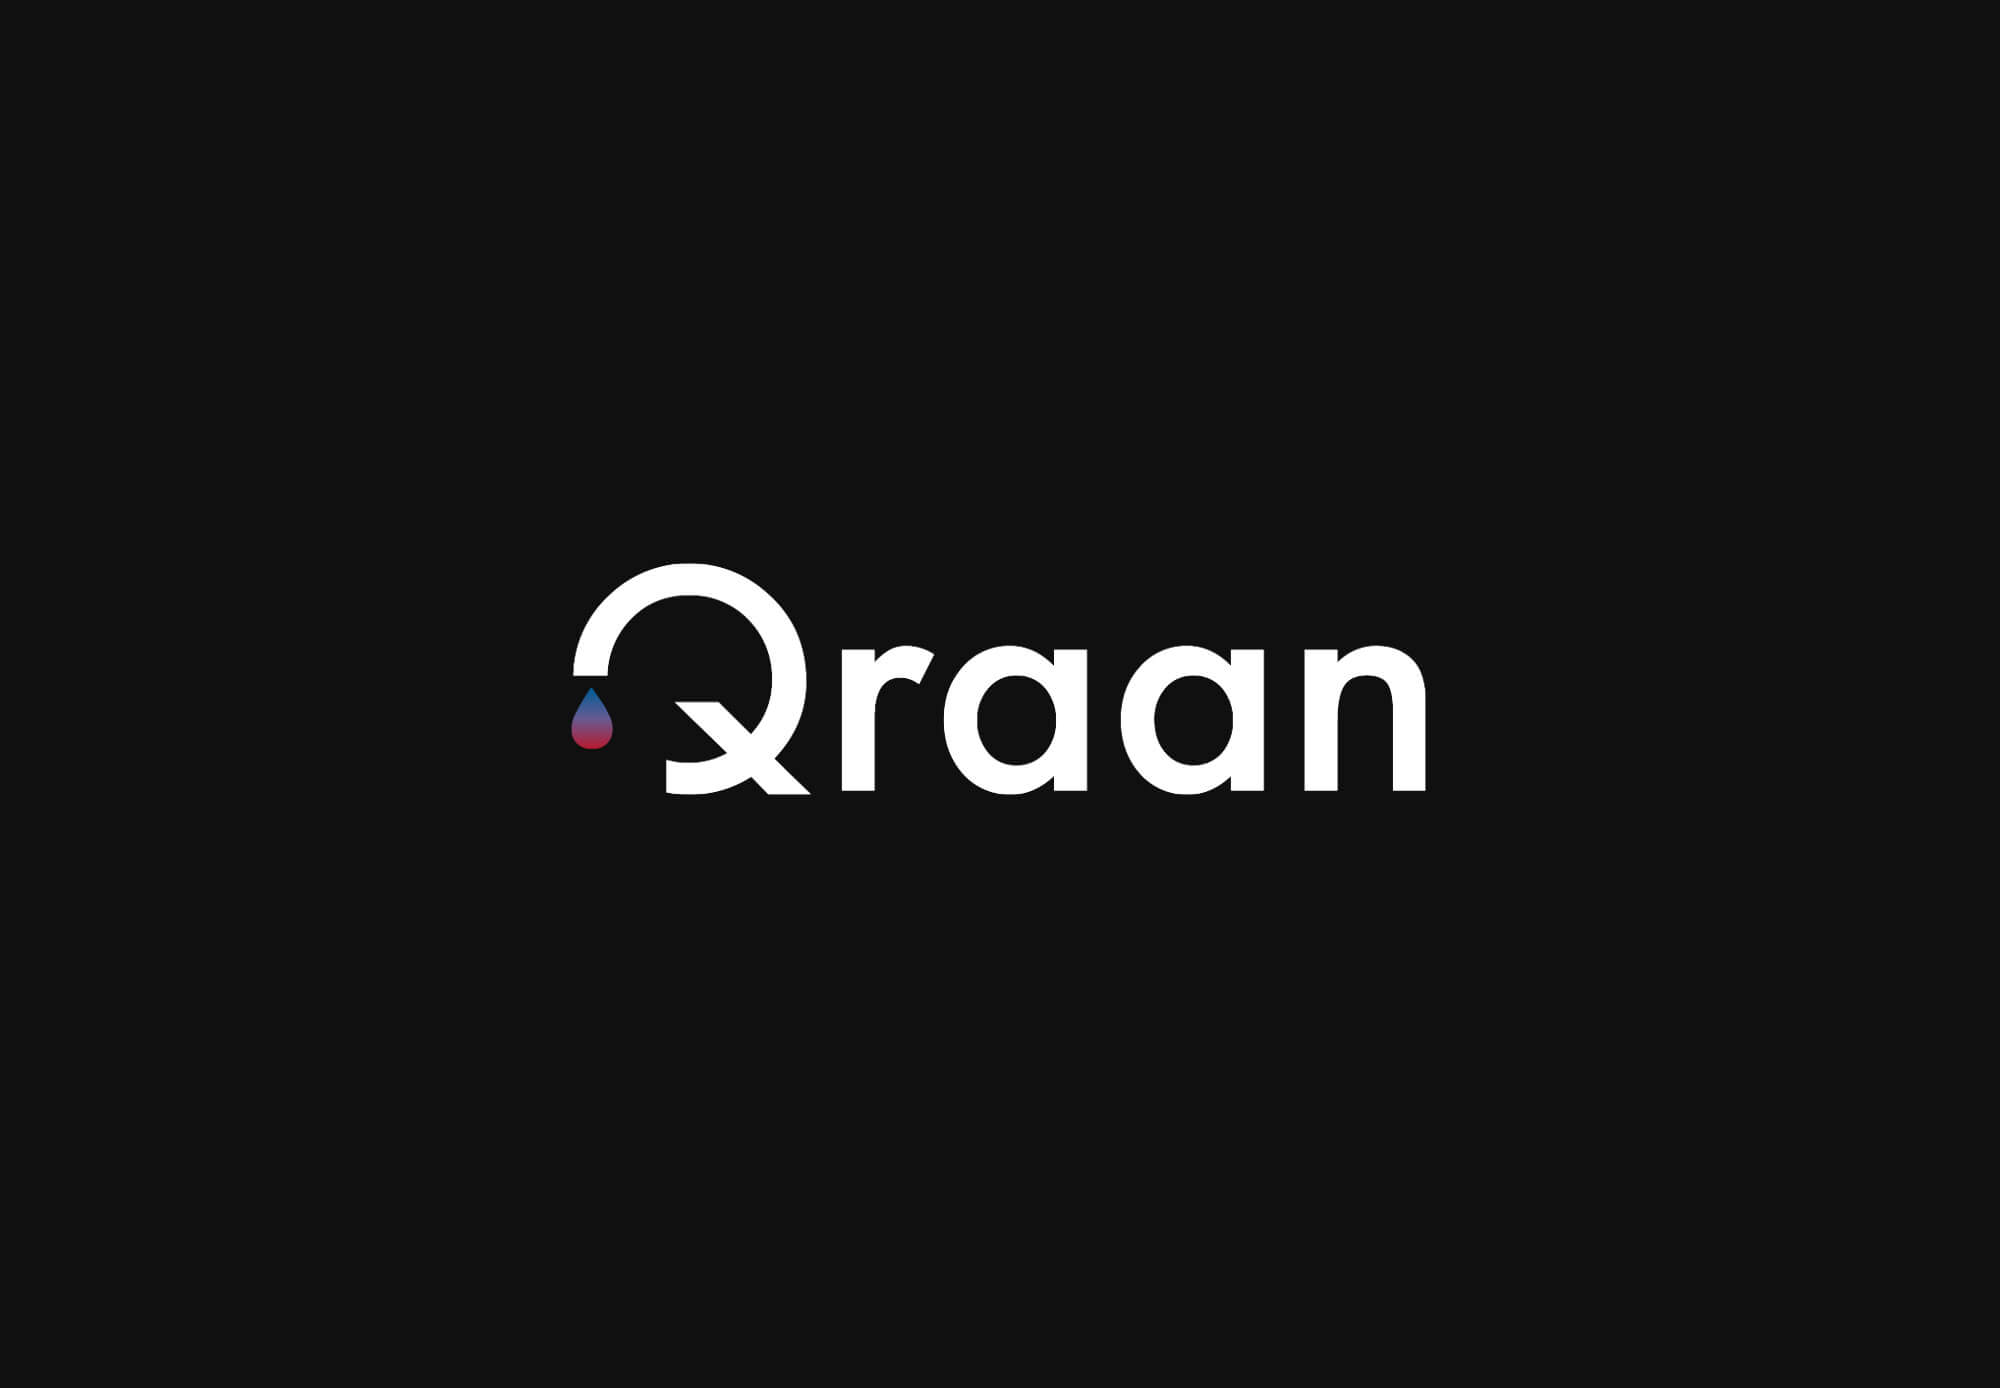 Tekst logo Qraan donker